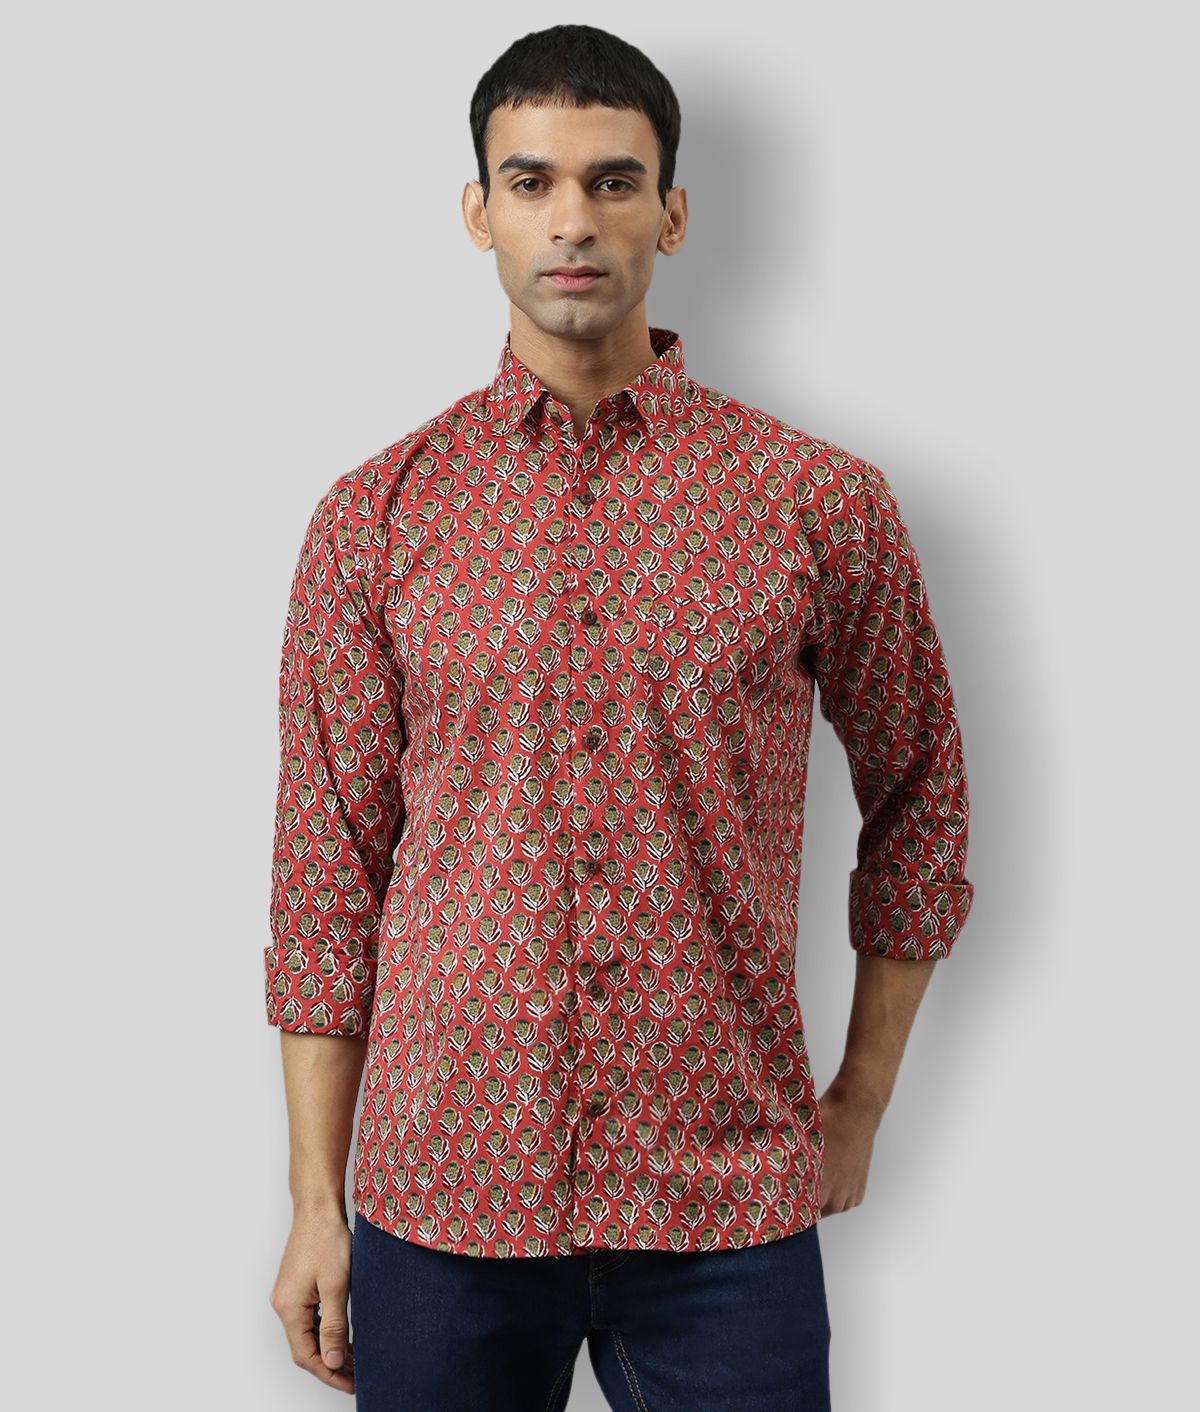     			Millennial Men - Red Cotton Regular Fit Men's Casual Shirt (Pack of 1 )